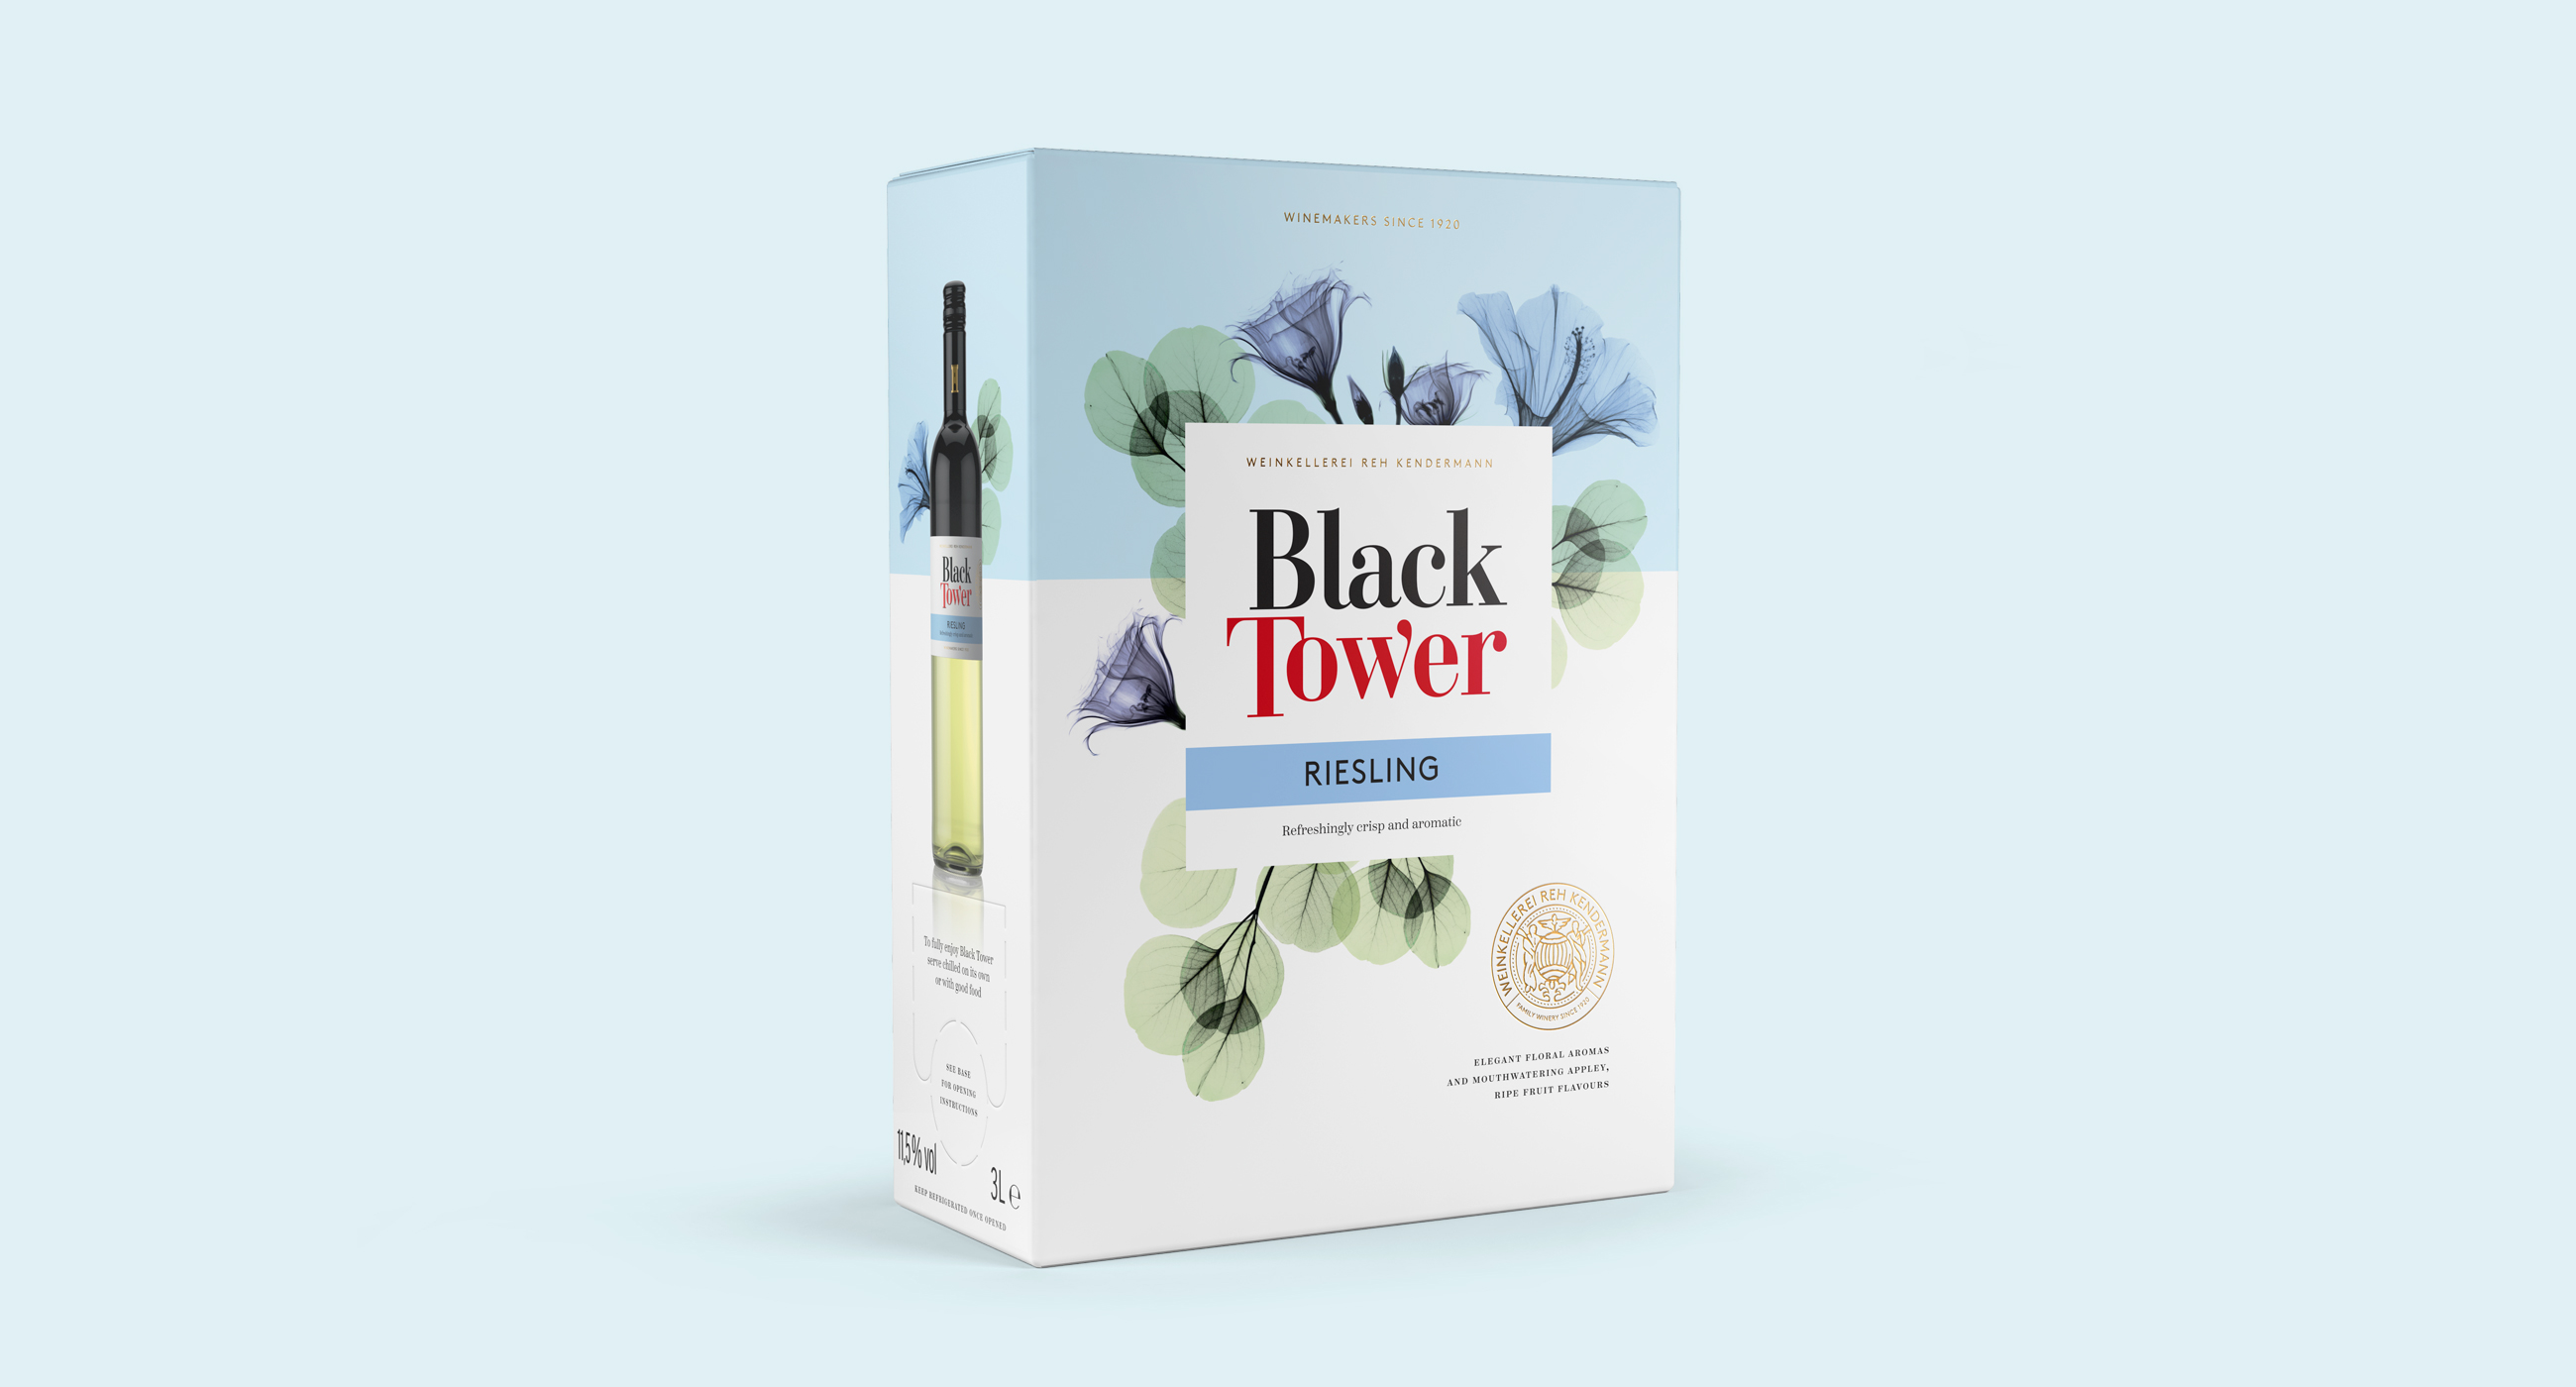 Black Tower bib bag in box riesling packaging